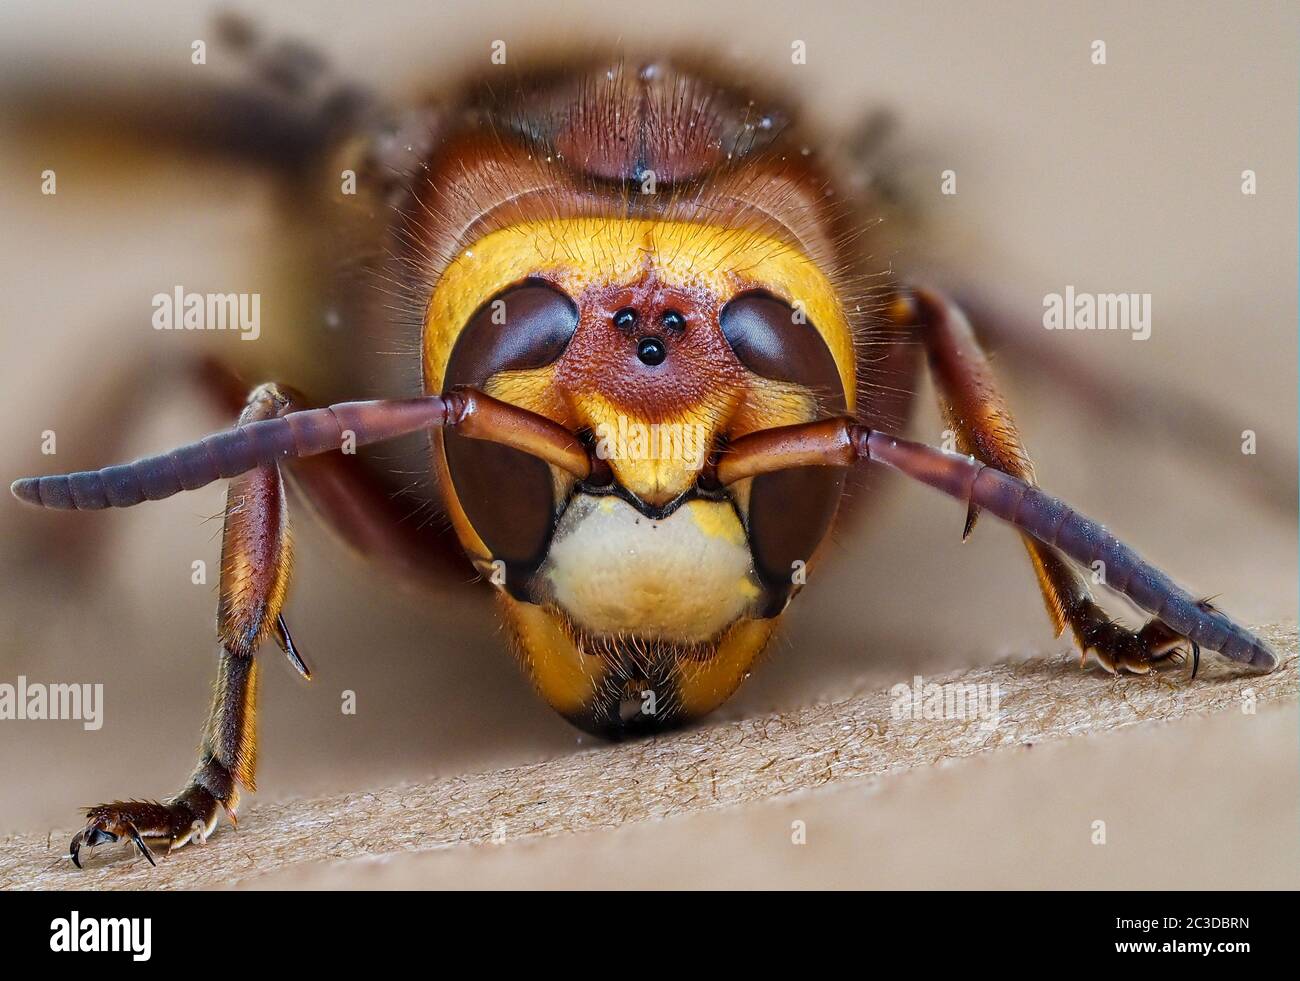 Face d'une reine hornet européenne Wasp Vespa crabro montrant des yeux composés "écran plat" et trois yeux ocelli ou simples - Avon UK Banque D'Images